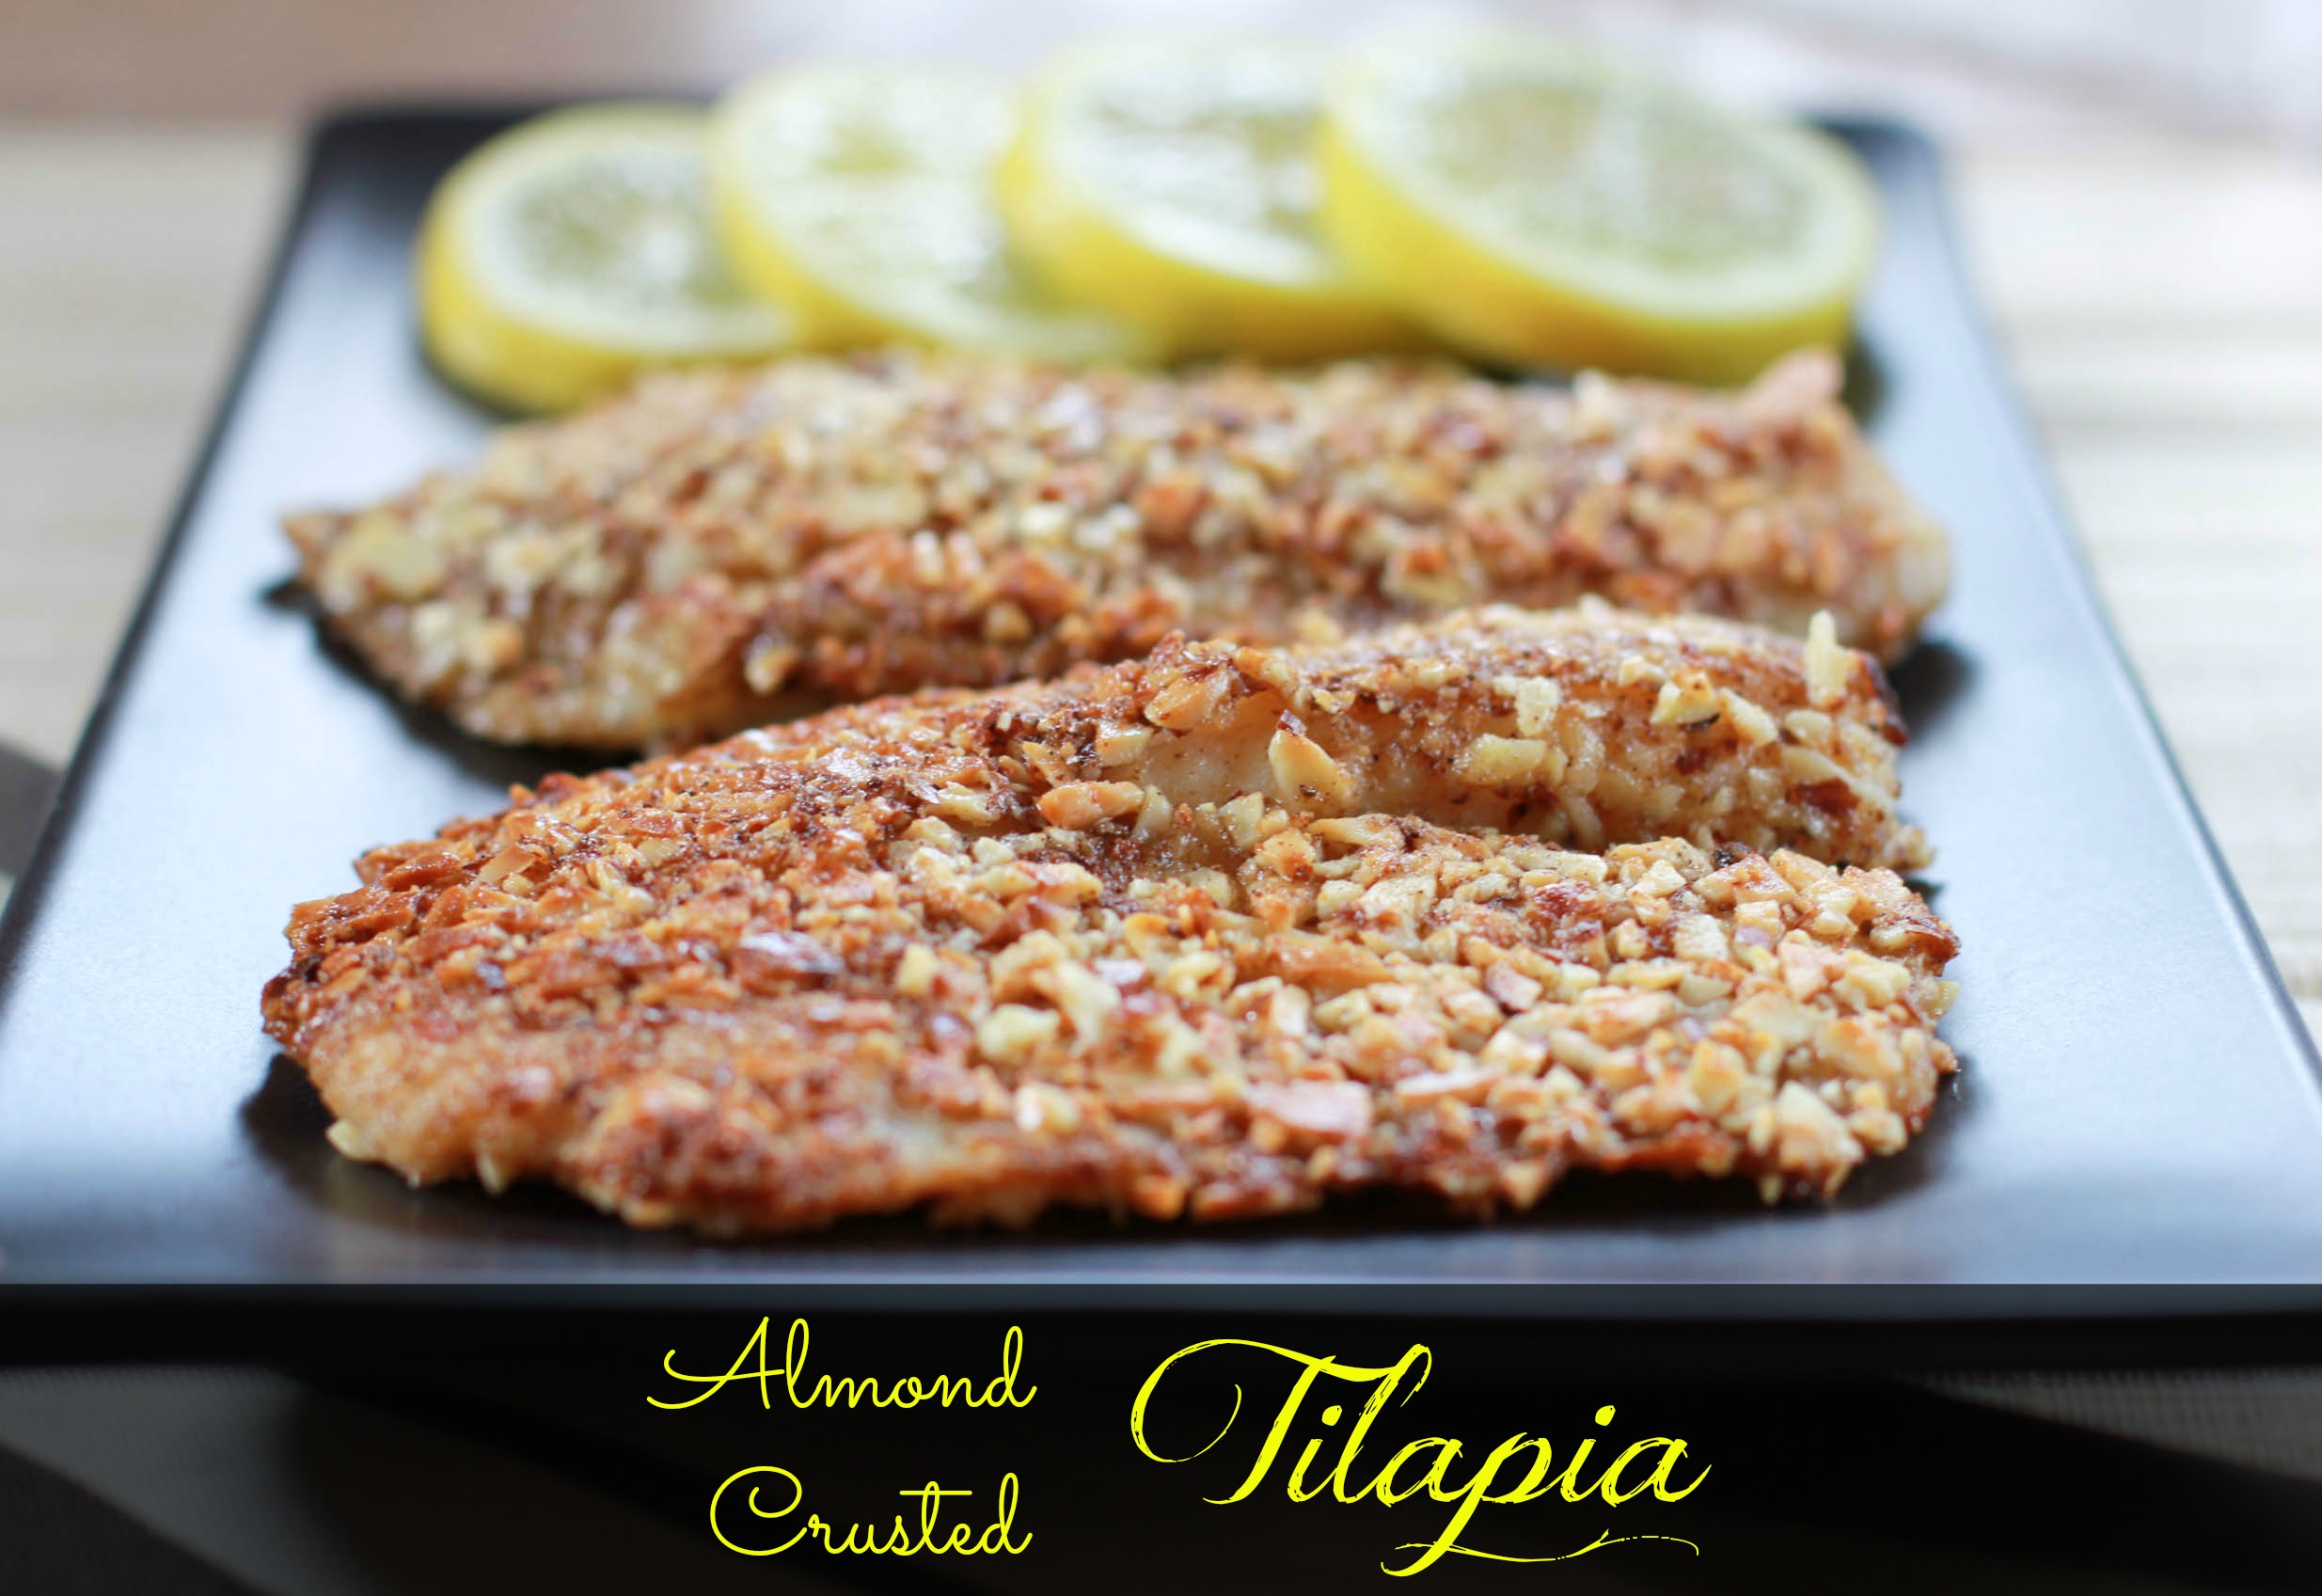 almond_crusted_tilapia_recipe